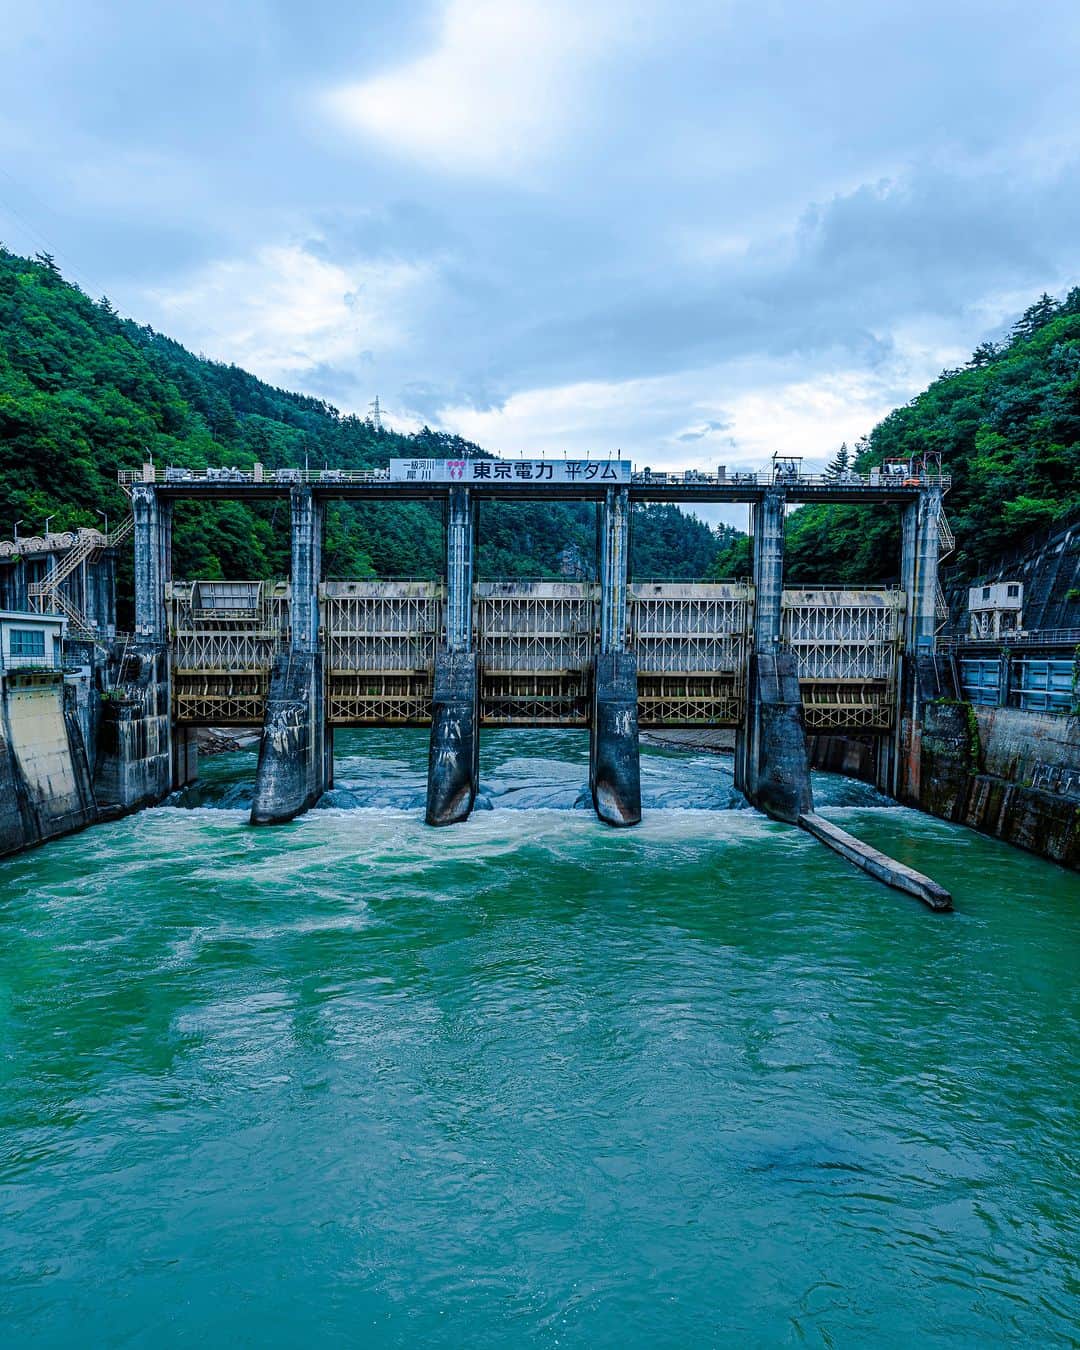 東京電力ホールディングス株式会社のインスタグラム：「平ダム Taira Dam  平ダムは、長野県長野市にある重力式コンクリートダムです。 洪水吐ゲートにはローラーゲートを採用しています。通常はゲートを閉めた状態で、河川から発電用に取水しています。貯水容量を超えないよう、降雨等による河川増水時は取水を停止して、全てのゲートを開き、ダムに貯まっている水を放流し自然河川の状態にします。 ダム上流は山清路（さんせいじ）と呼ばれる名勝で、穏やかな川の流れに険しい山々が映えます。  #東京電力 #tepco #長野県 #ダム #ダム巡り #ダム好き #damphotography #damphoto #水力発電 #再生可能エネルギー #renewableenergy #renewable #renewablepower #夏 #風景写真 #景色写真」